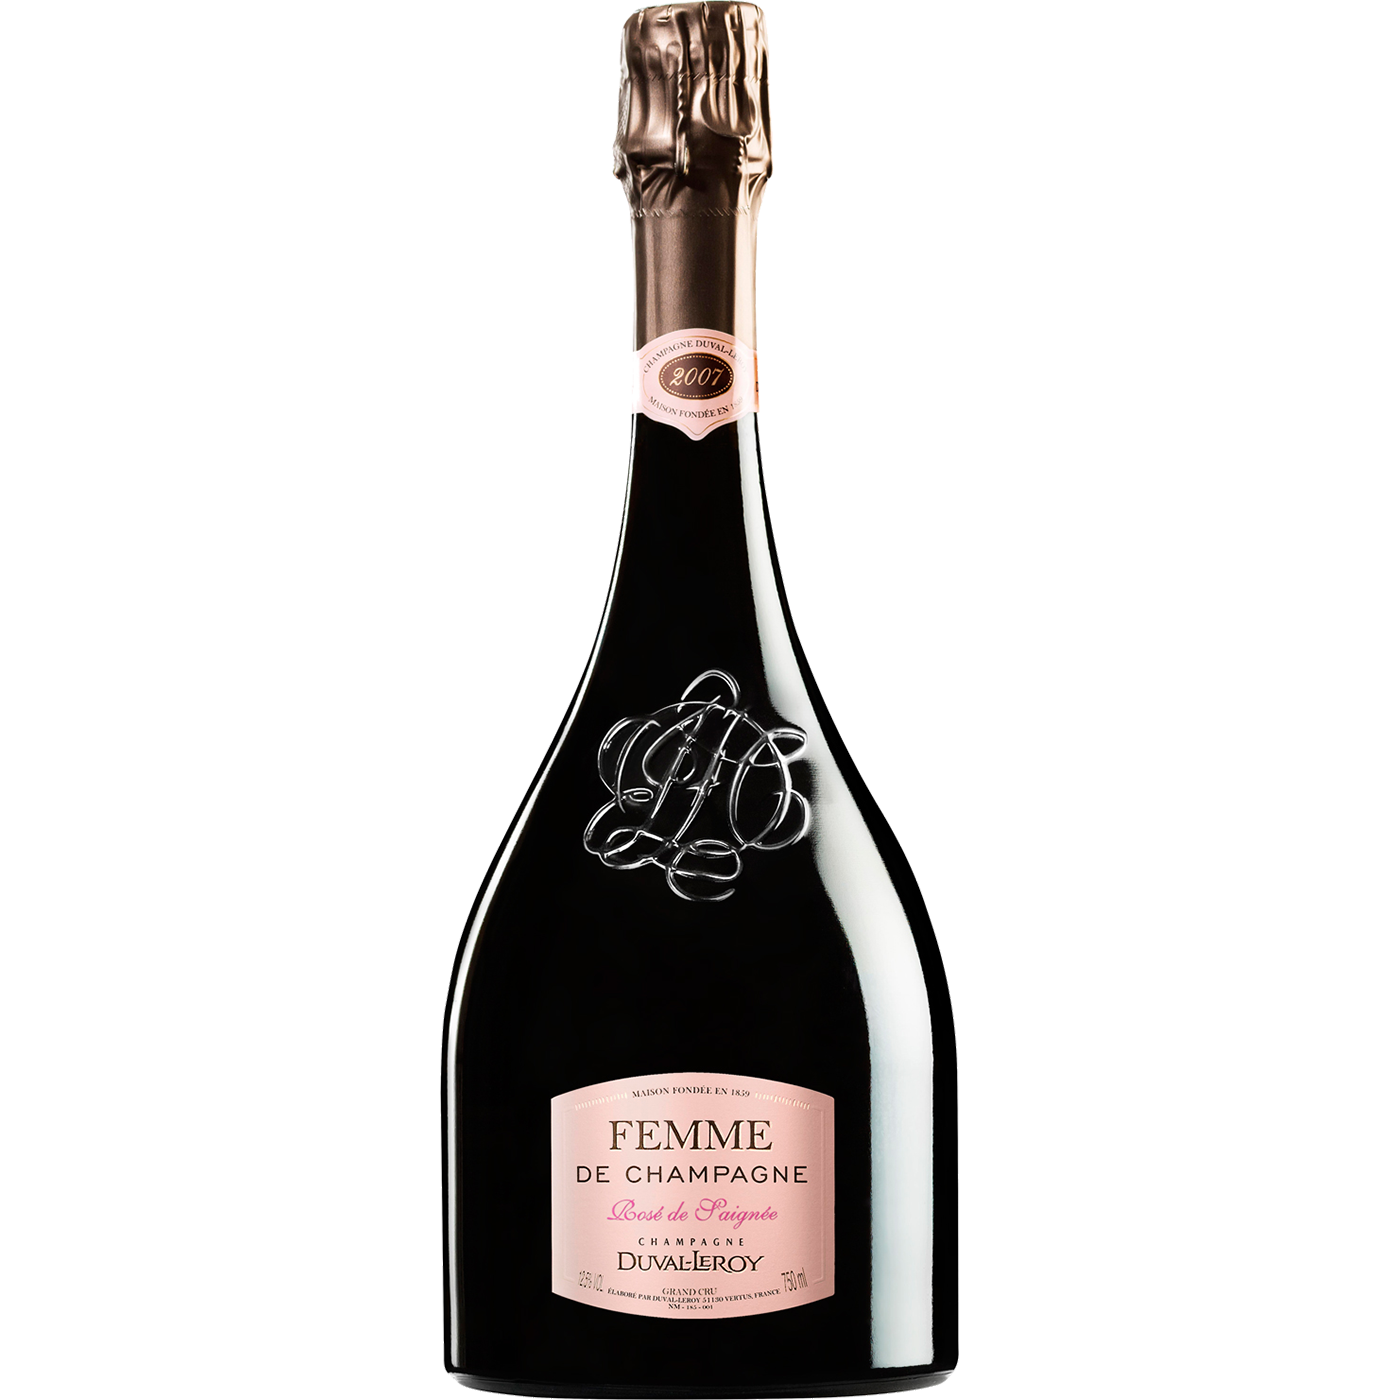 Duval-Leroy "Femme de Champagne" Rosé 2007